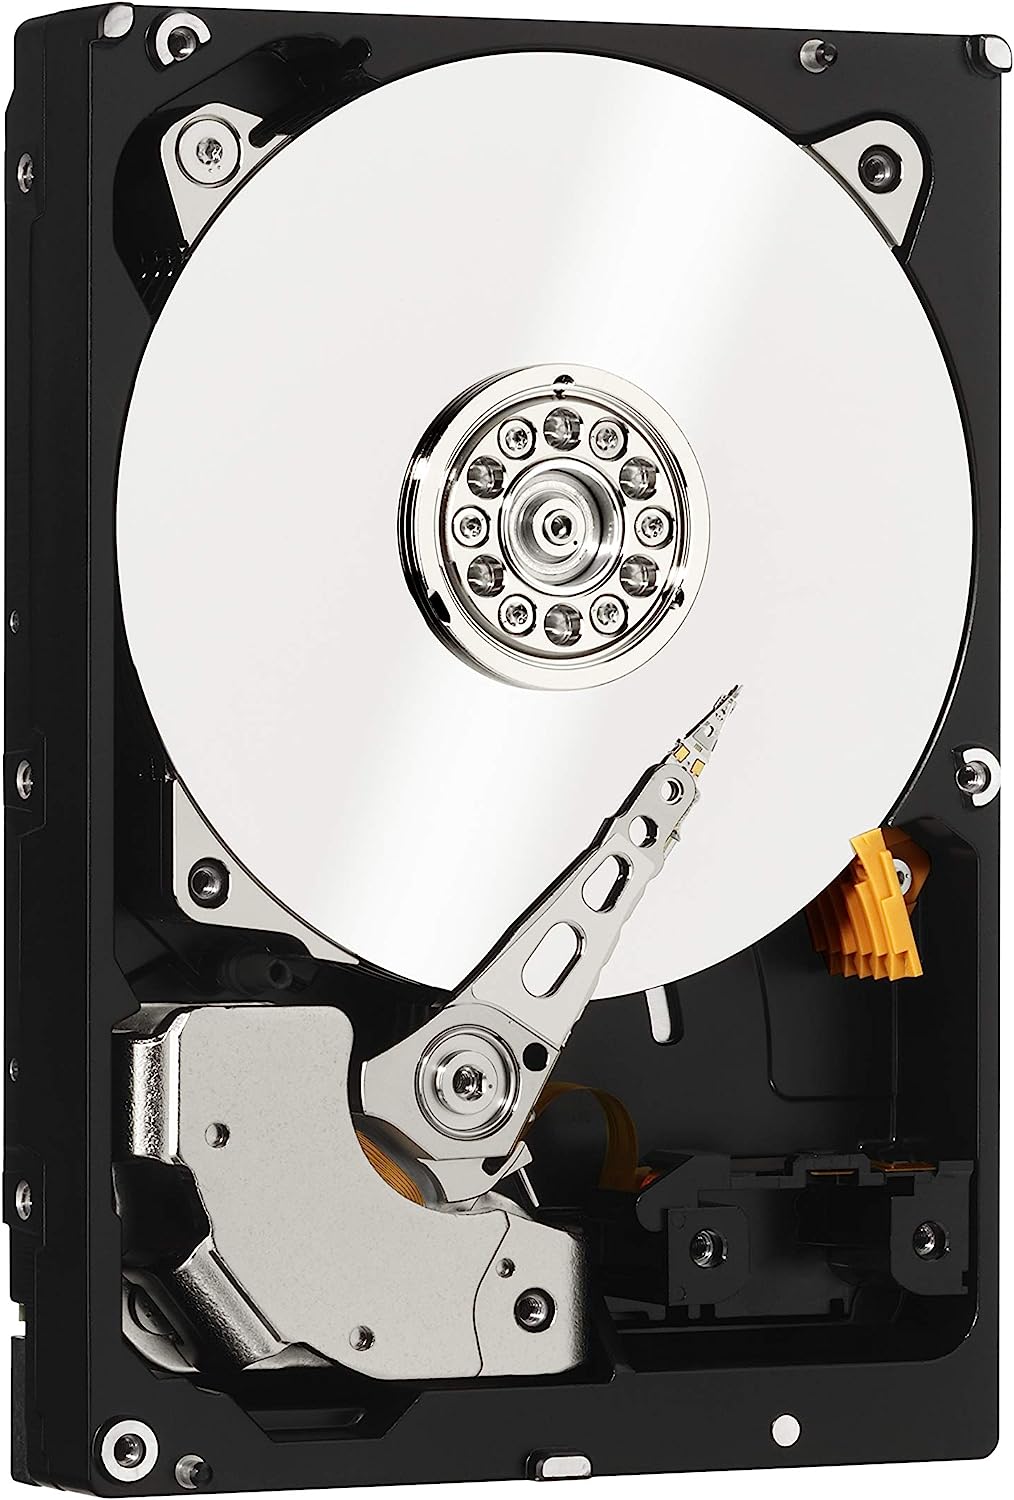 WD Black 6TB Performance Desktop Hard Disk Drive - 7200 RPM SATA 6Gb/s 256MB Cache 3.5 Inch - WD6003FZBX